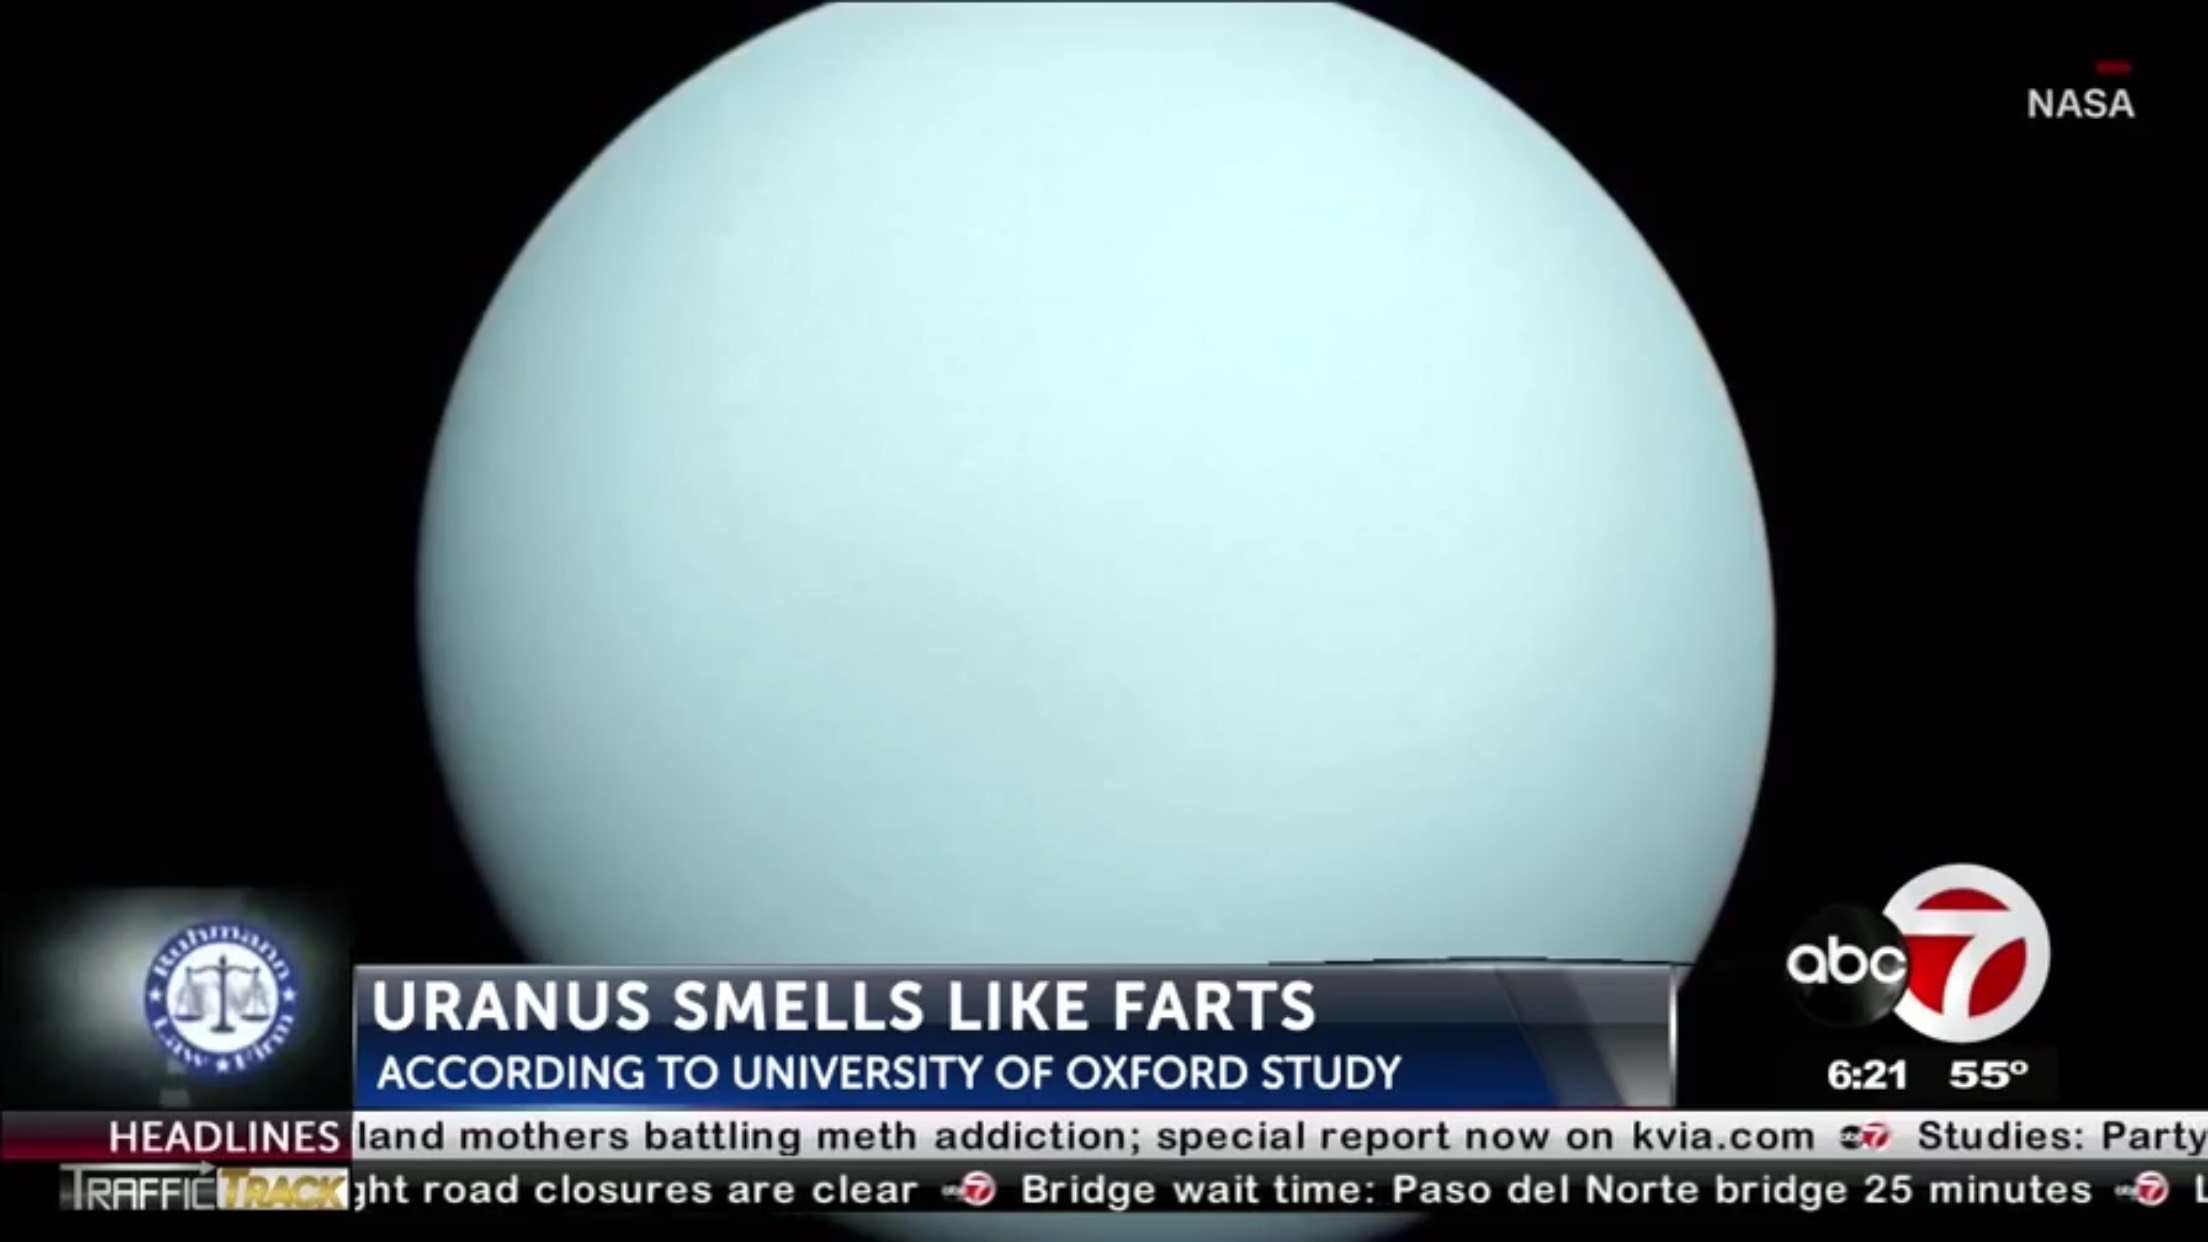 Uranus Smells Like Farts